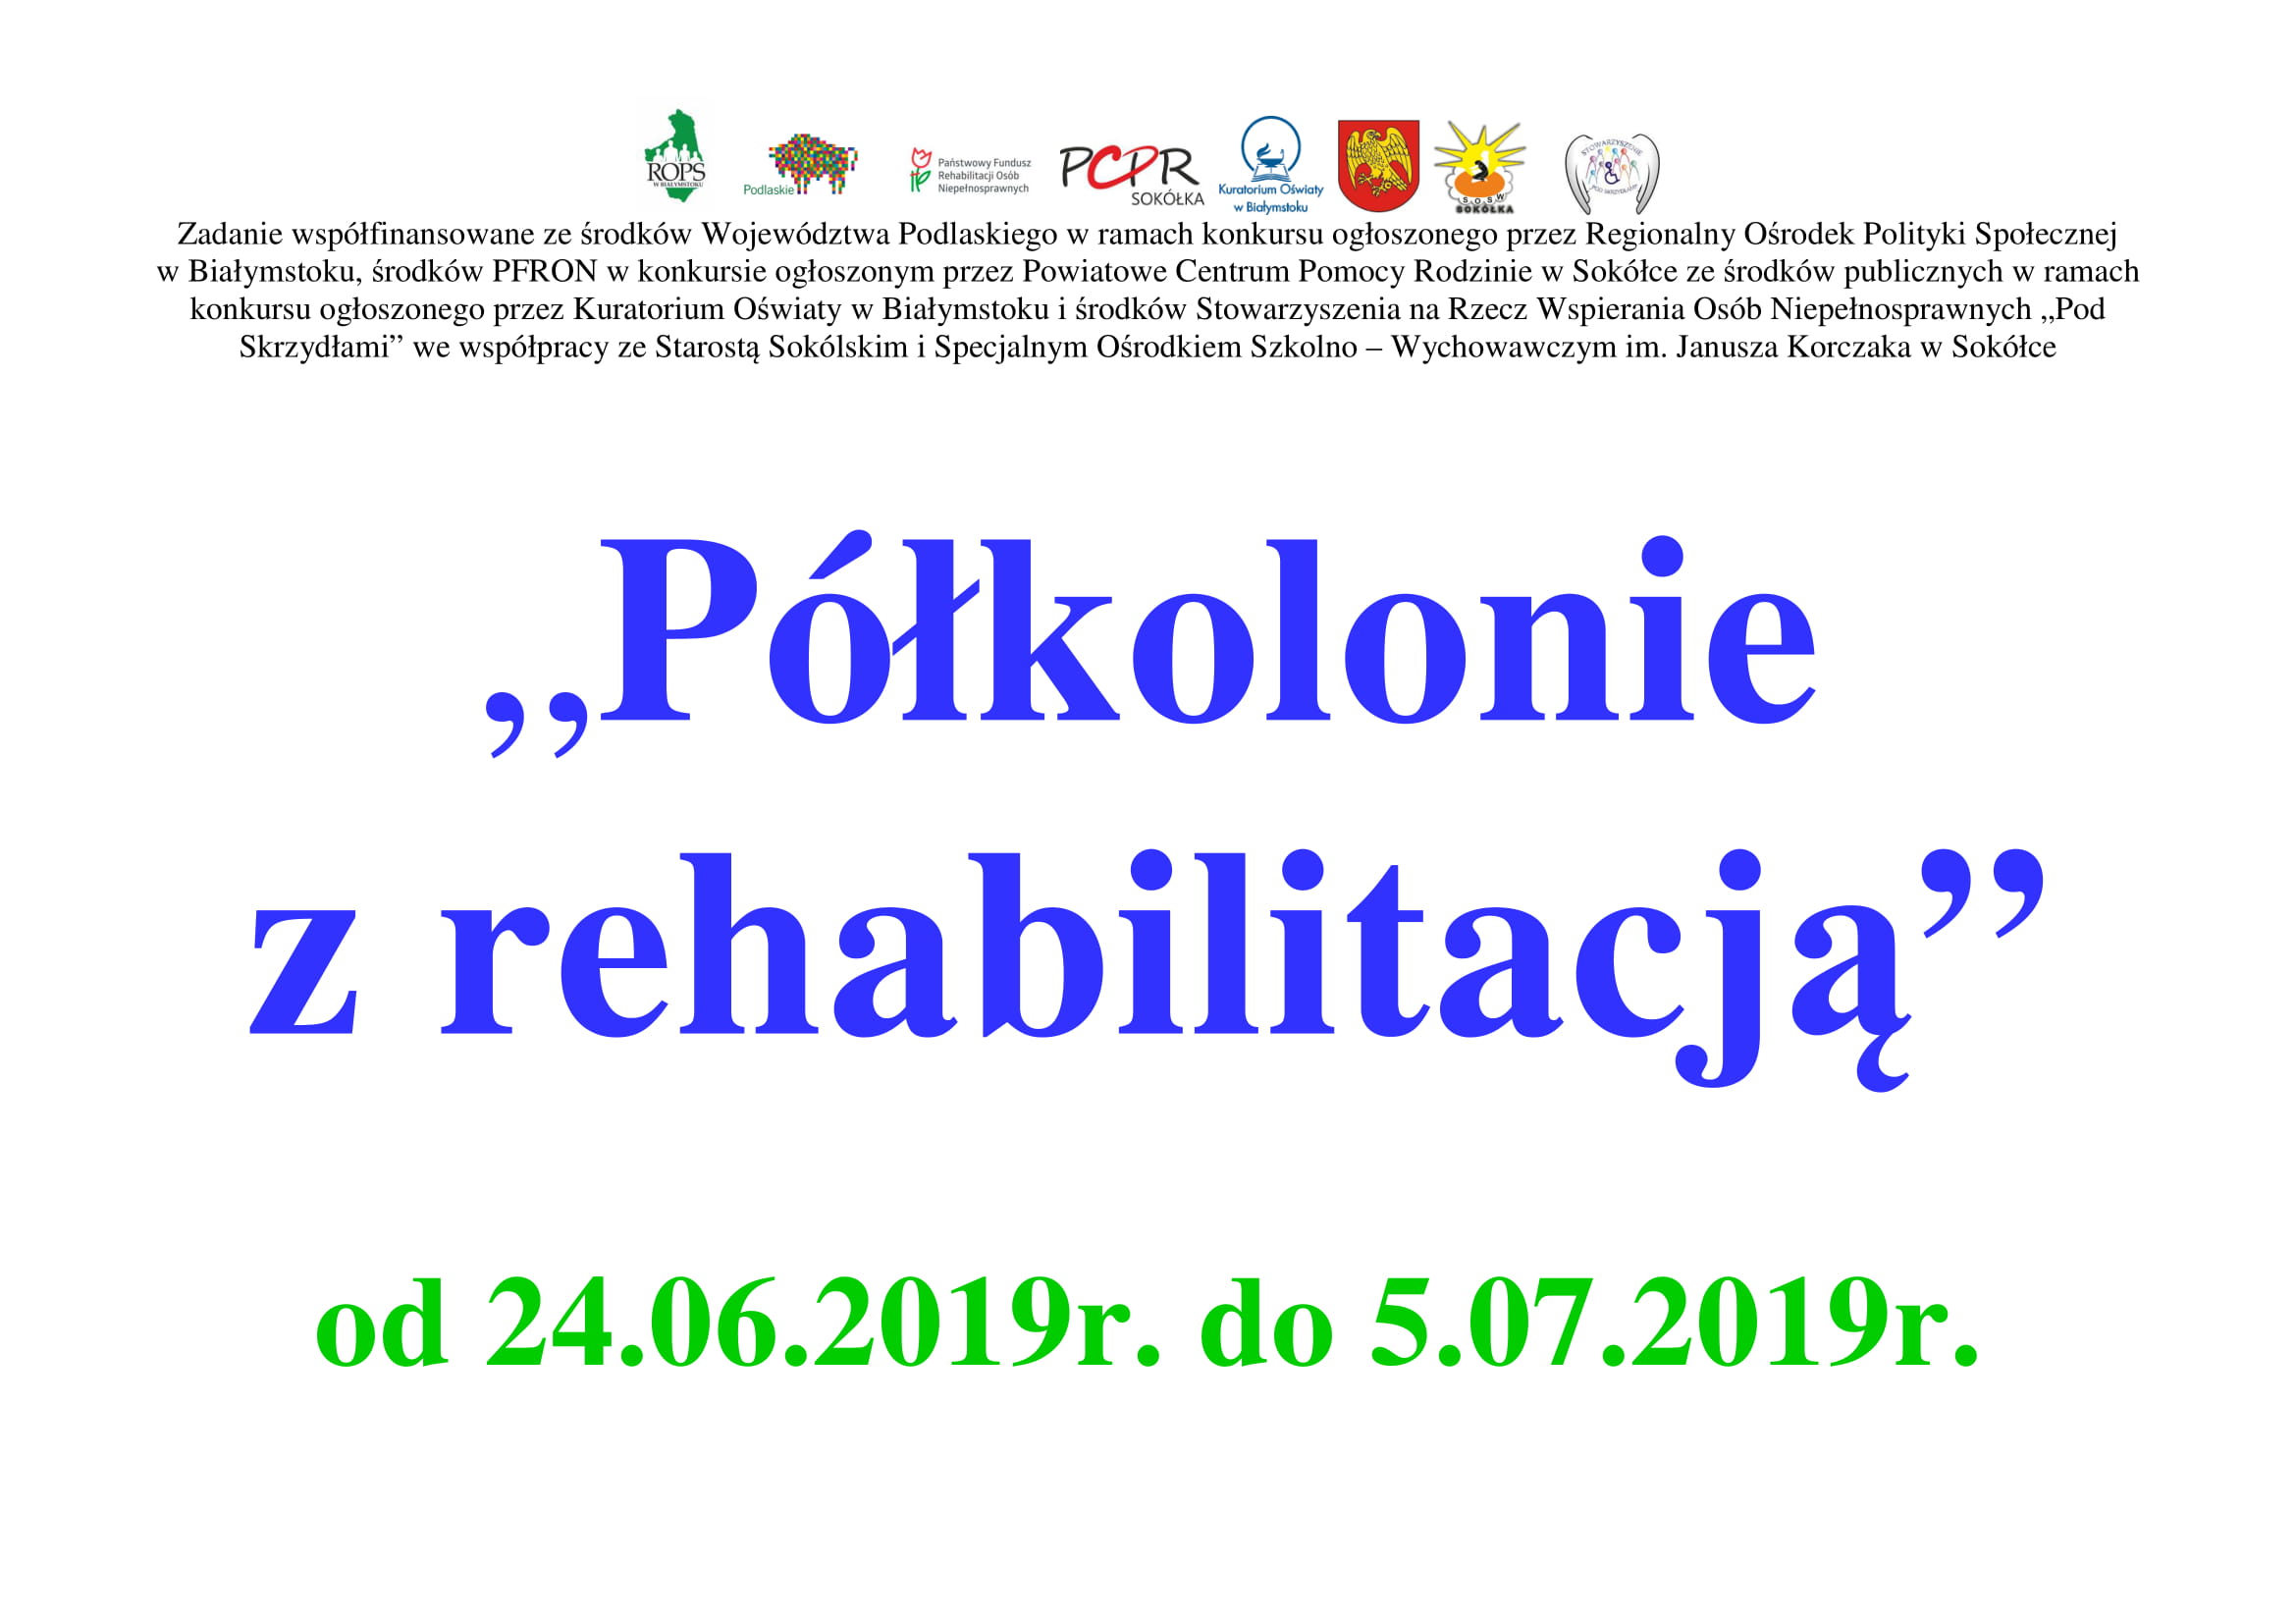 https://www.soswsokolka.pl/images/pkolonie_-plkolonie_z_rehabilitacj-1.jpg